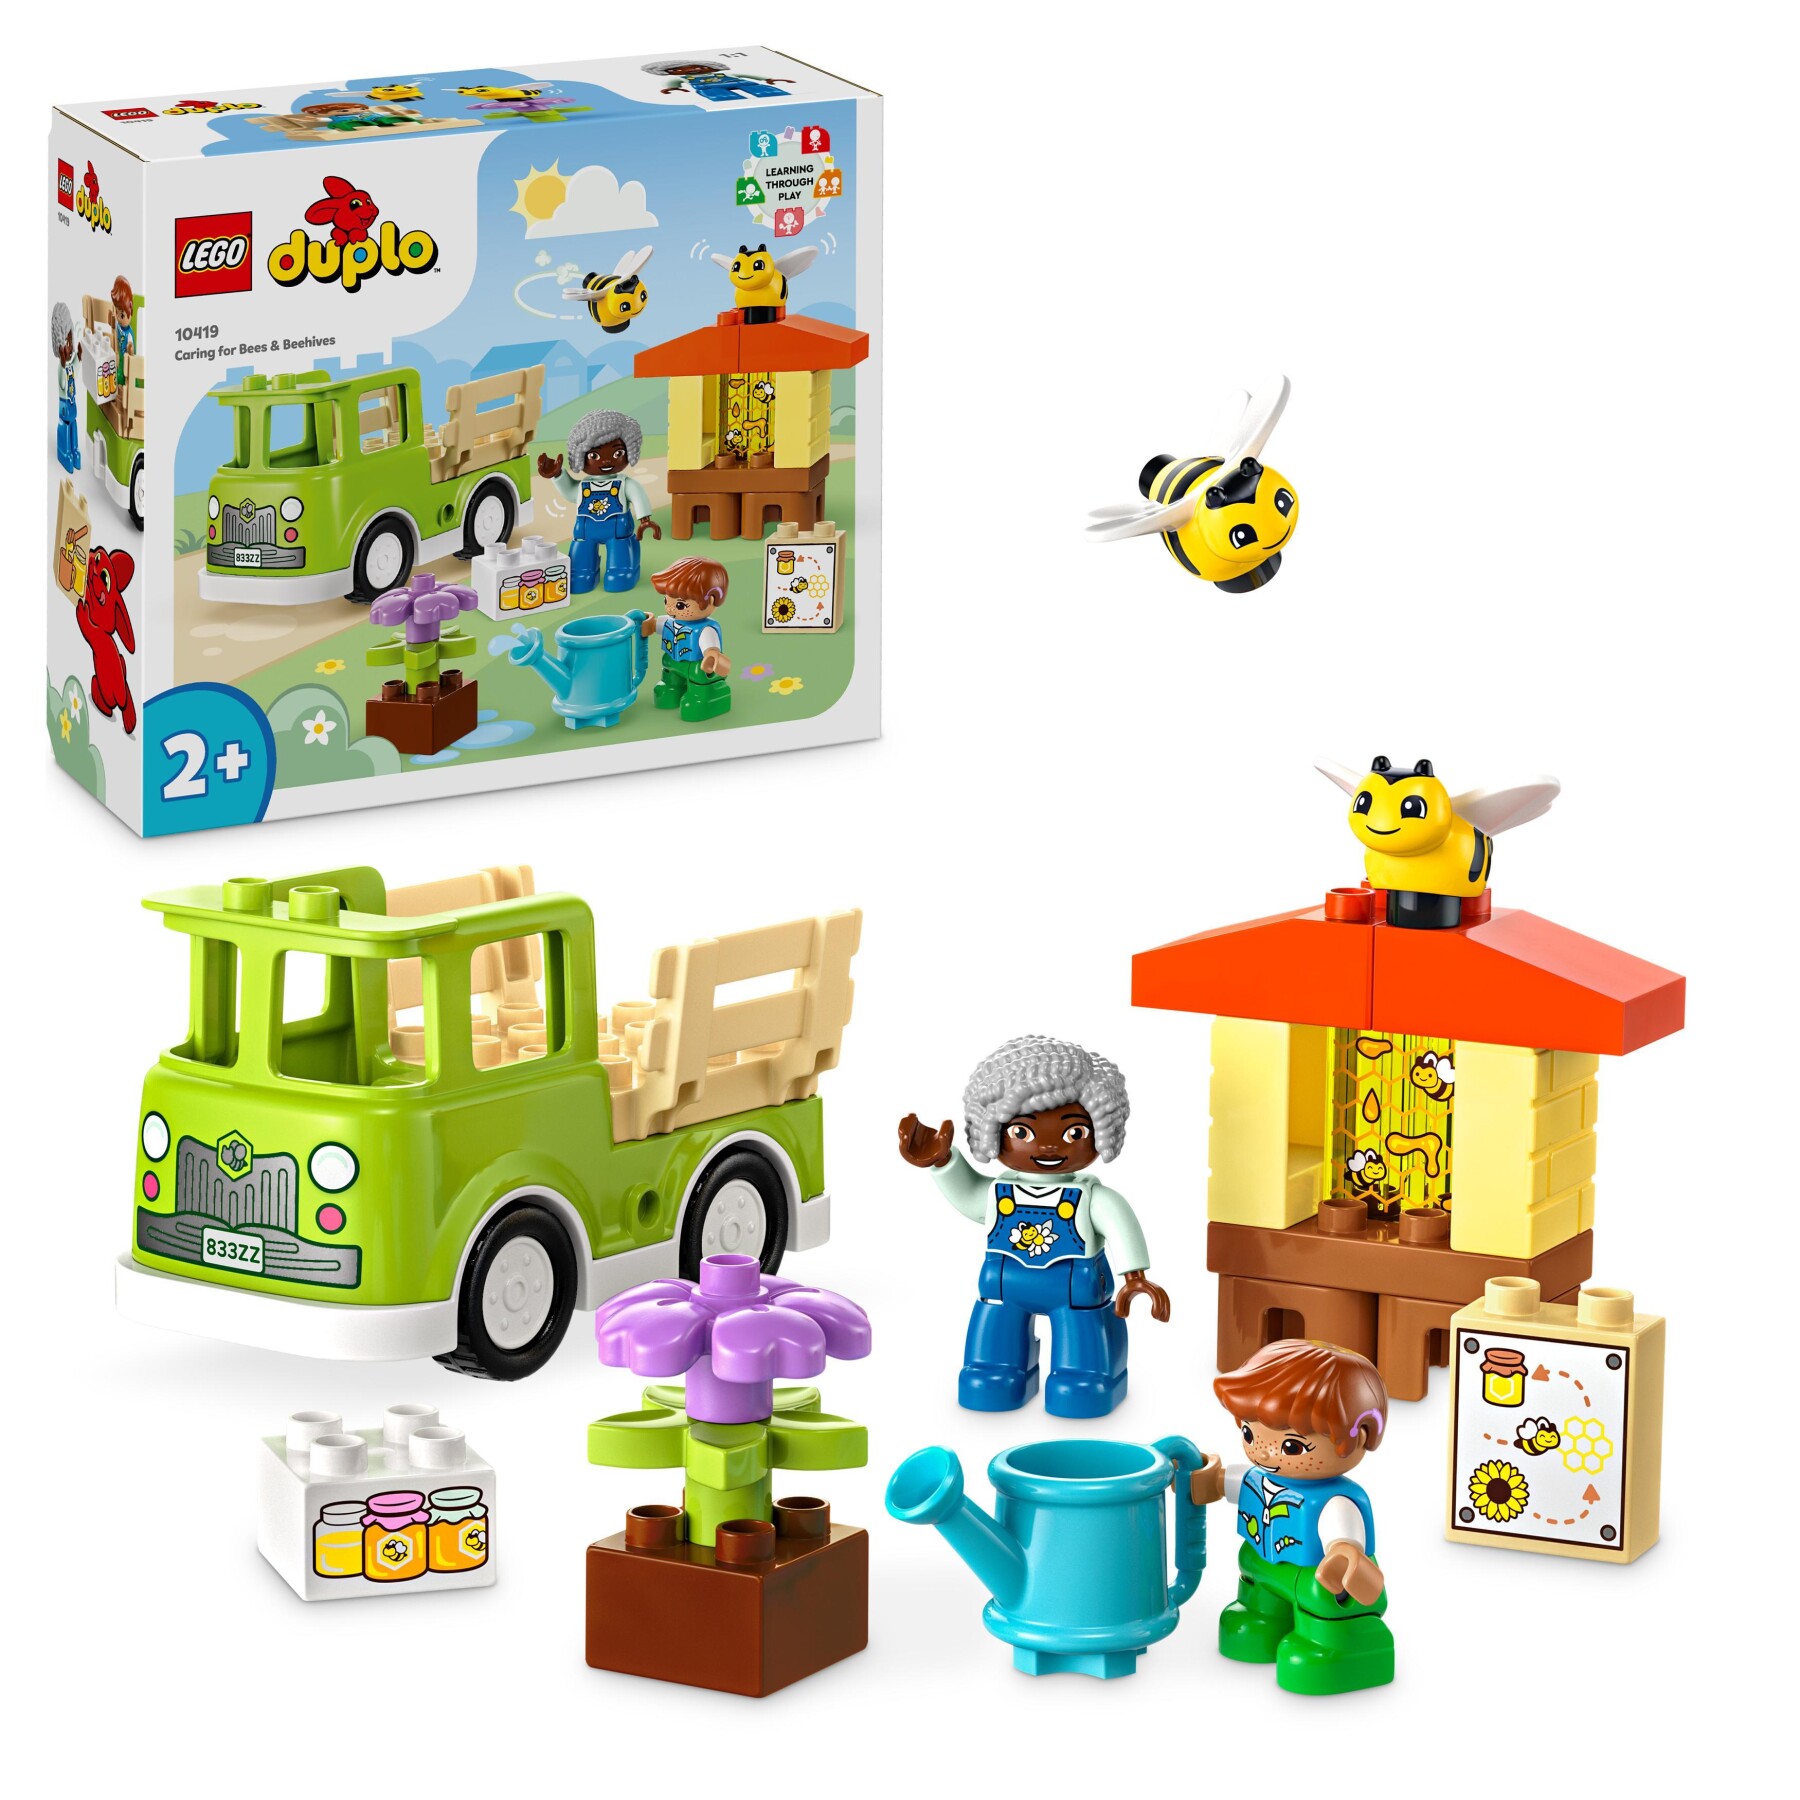 Lego duplo 10967 motocicletta della polizia, moto giocattolo per bambini di  2+ anni, giochi creativi ed educativi - Toys Center